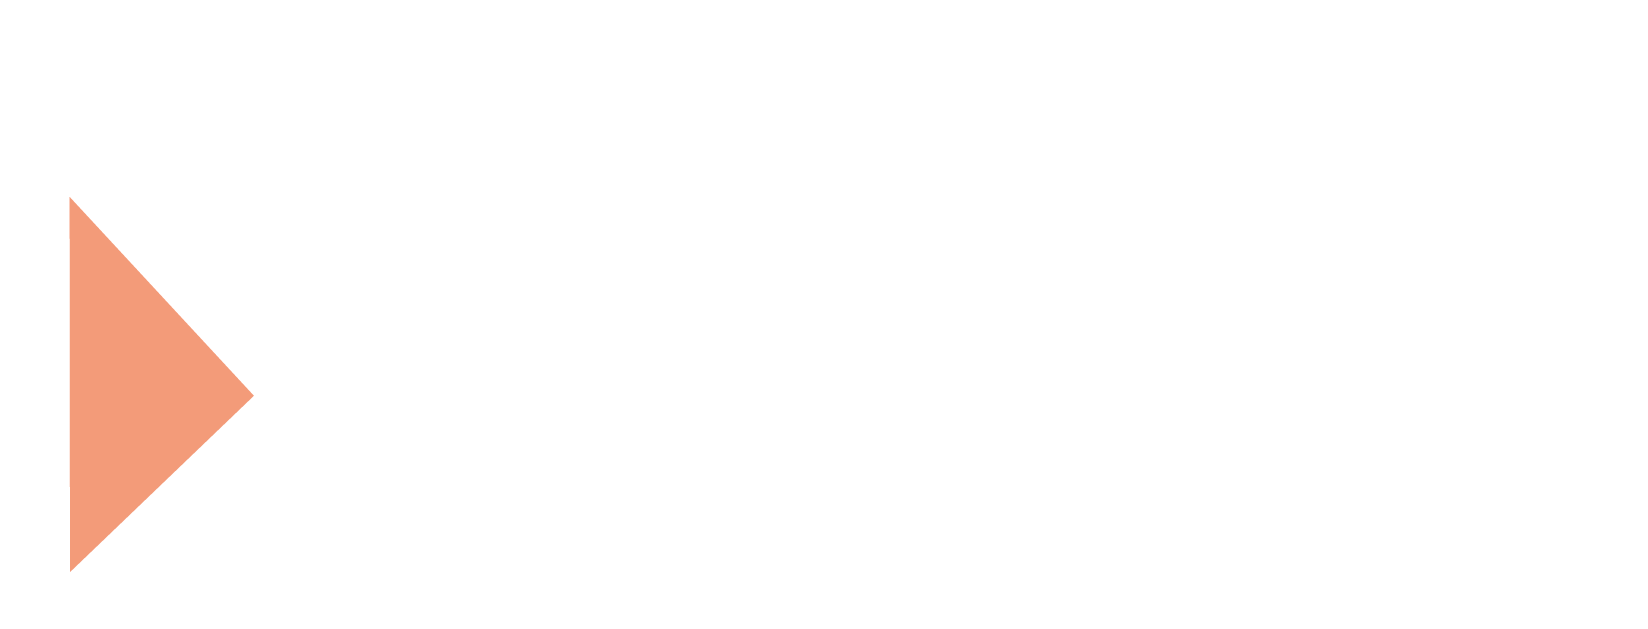 Cibimmob